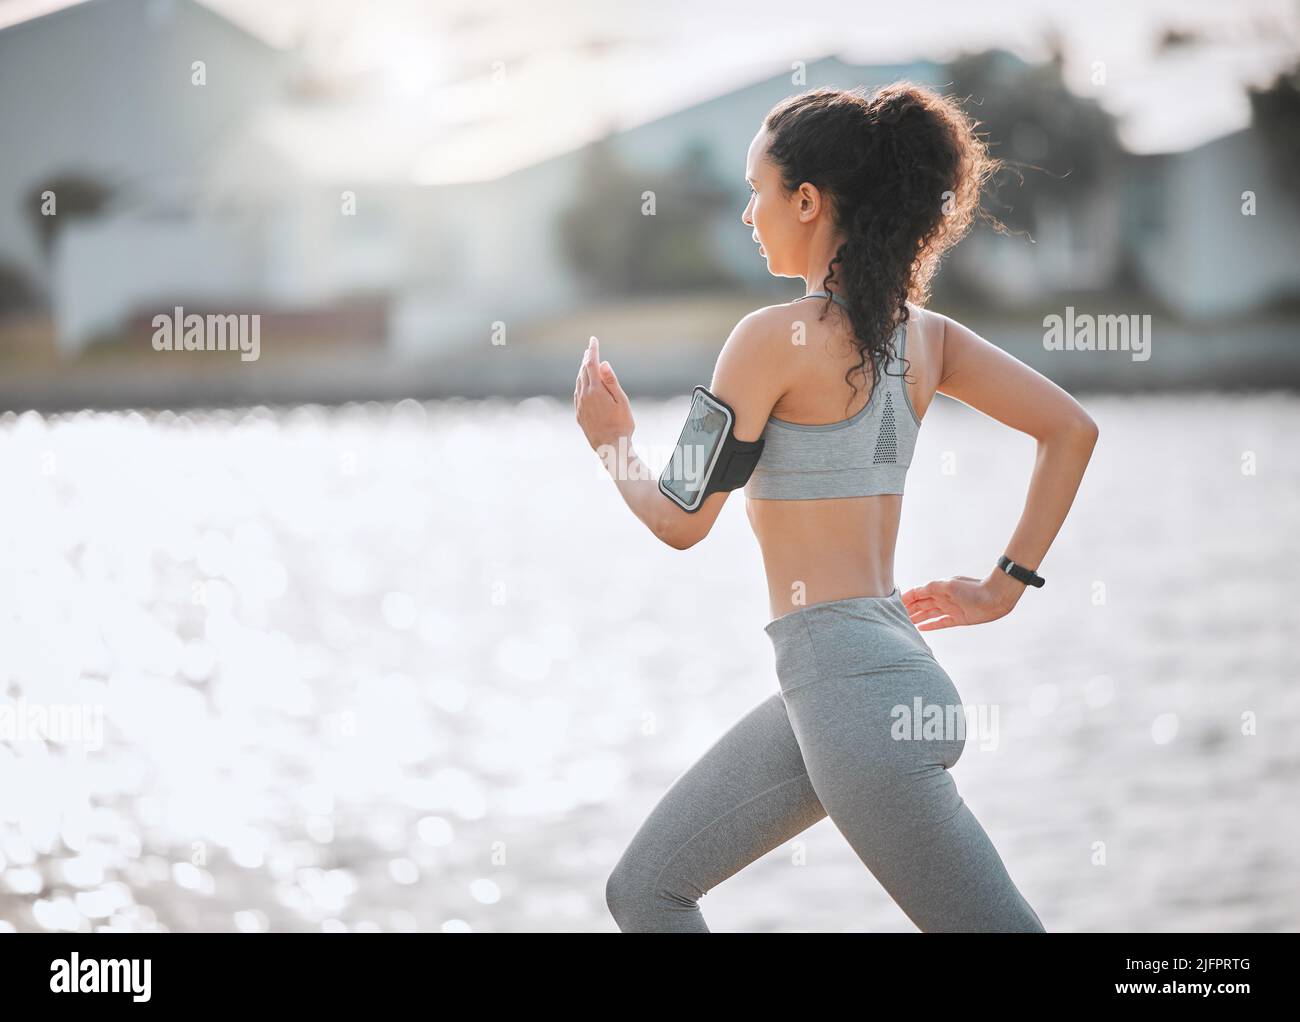 Réglage du rythme. Photo courte d'une jeune athlète féminine attirante s'exerçant à l'extérieur. Banque D'Images